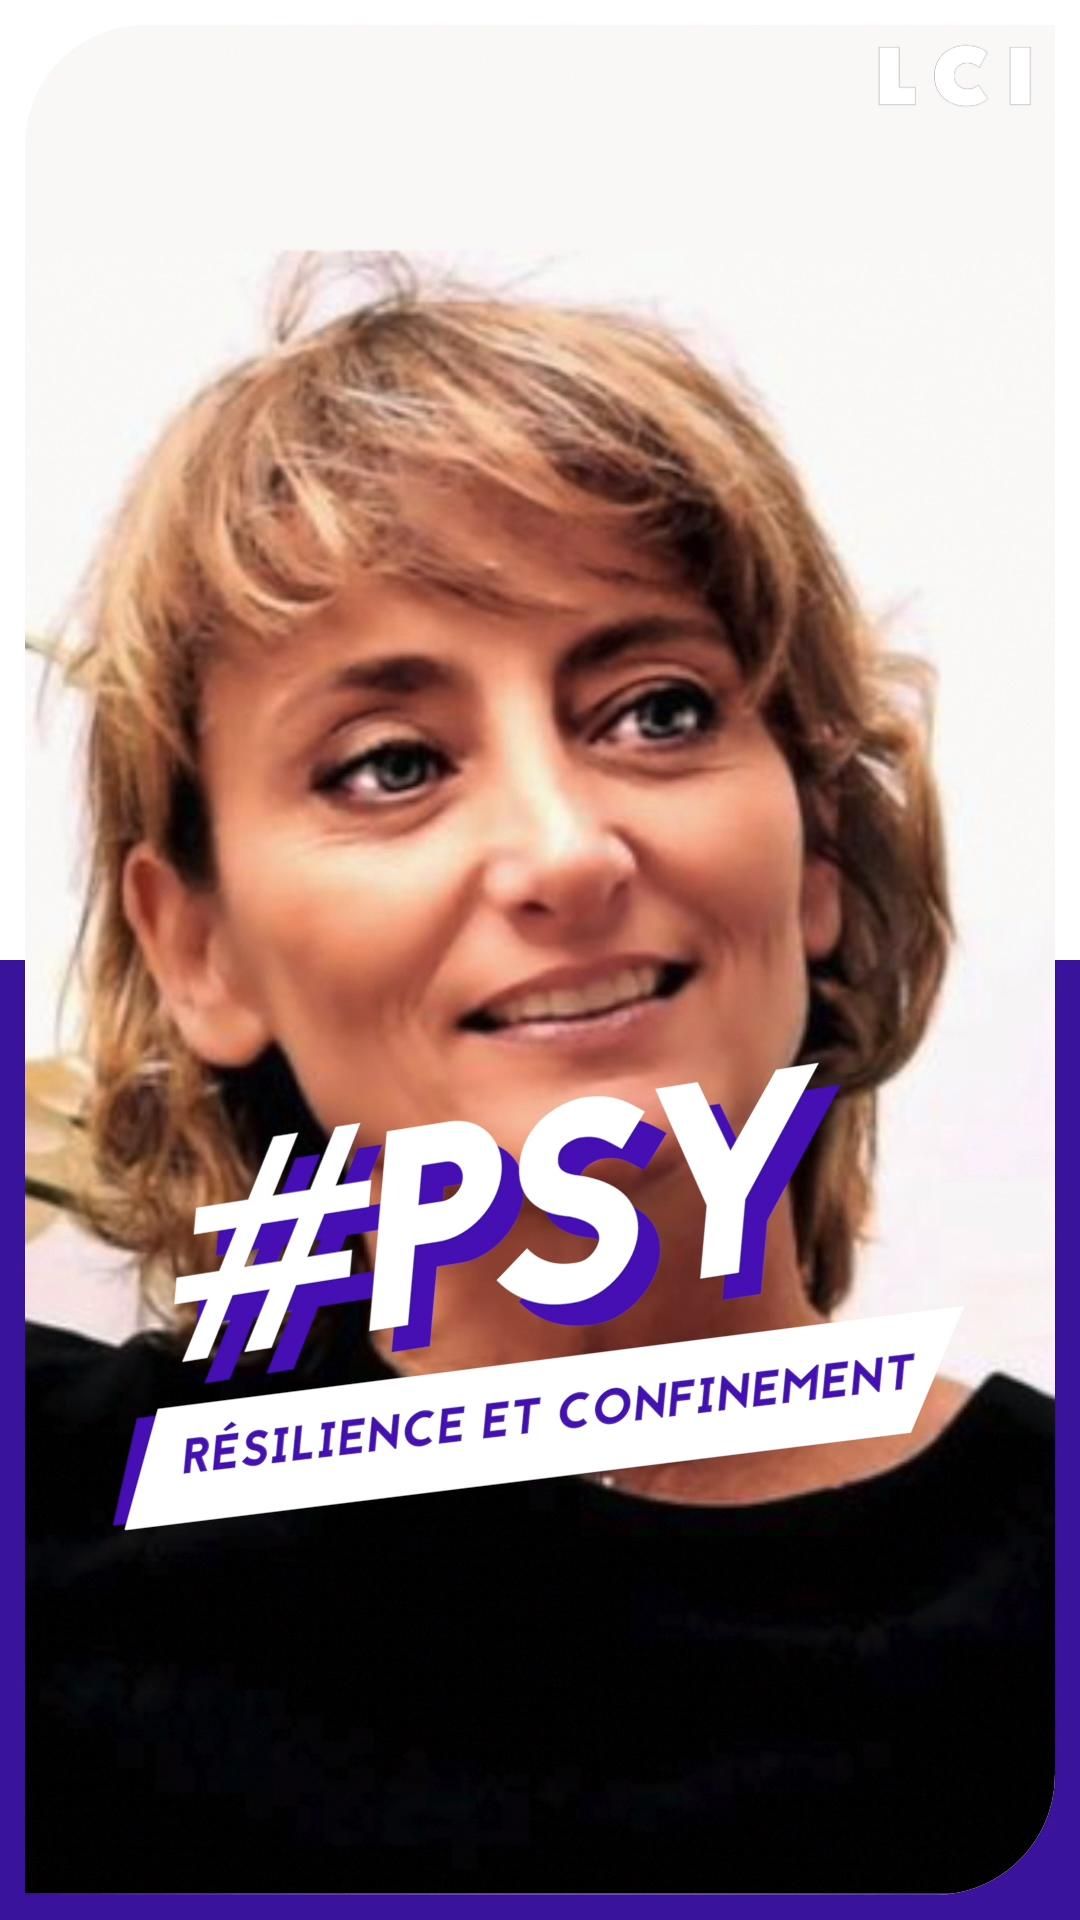 LCI PLAY - #PSY : résilience et confinement